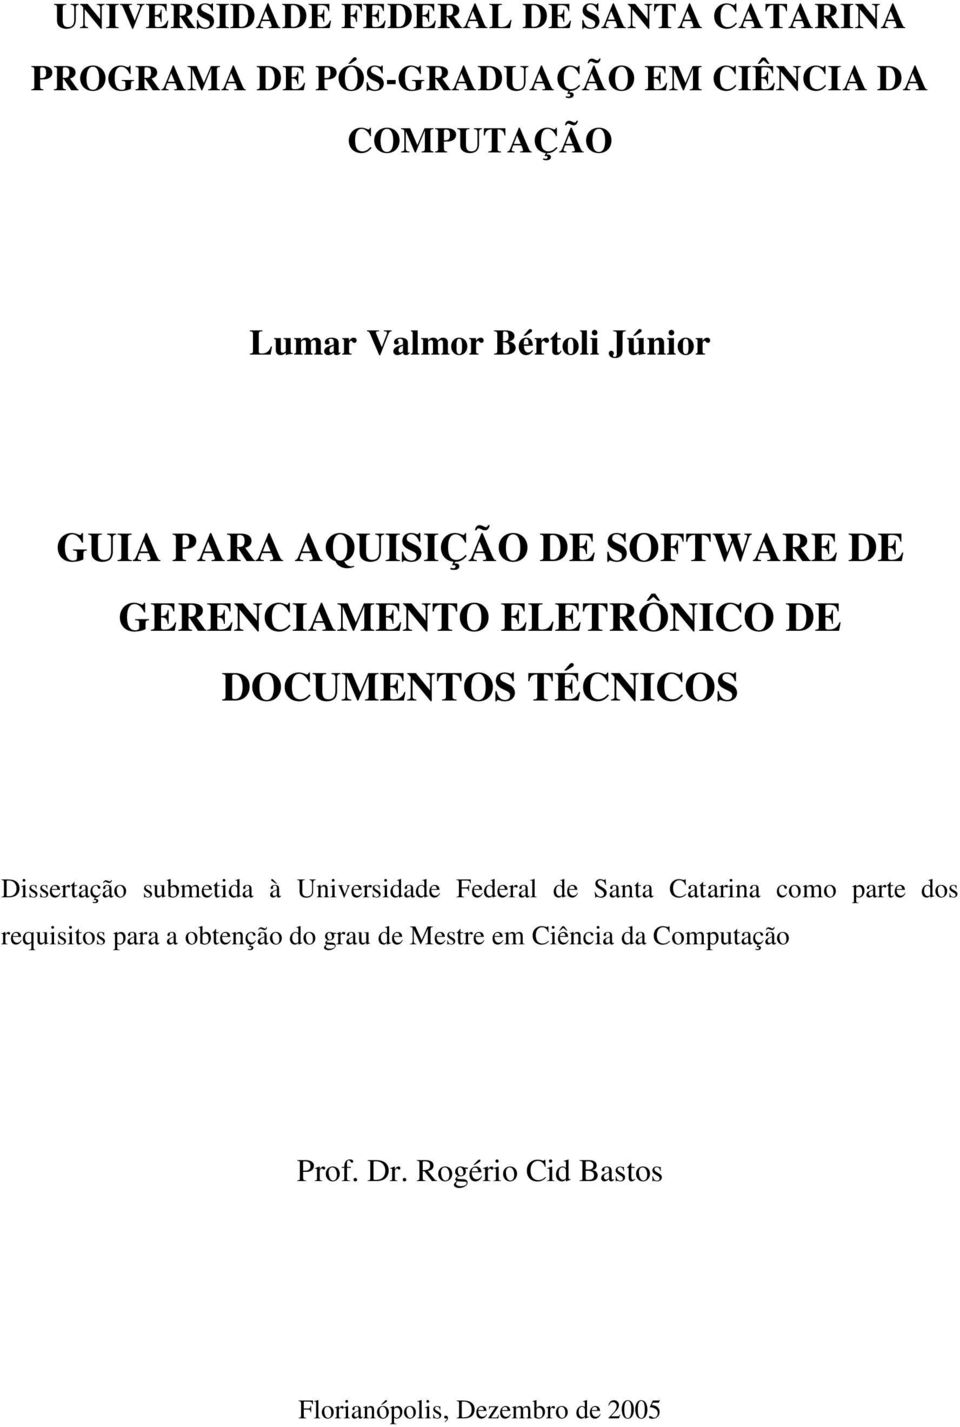 Dissertação submetida à Universidade Federal de Santa Catarina como parte dos requisitos para a